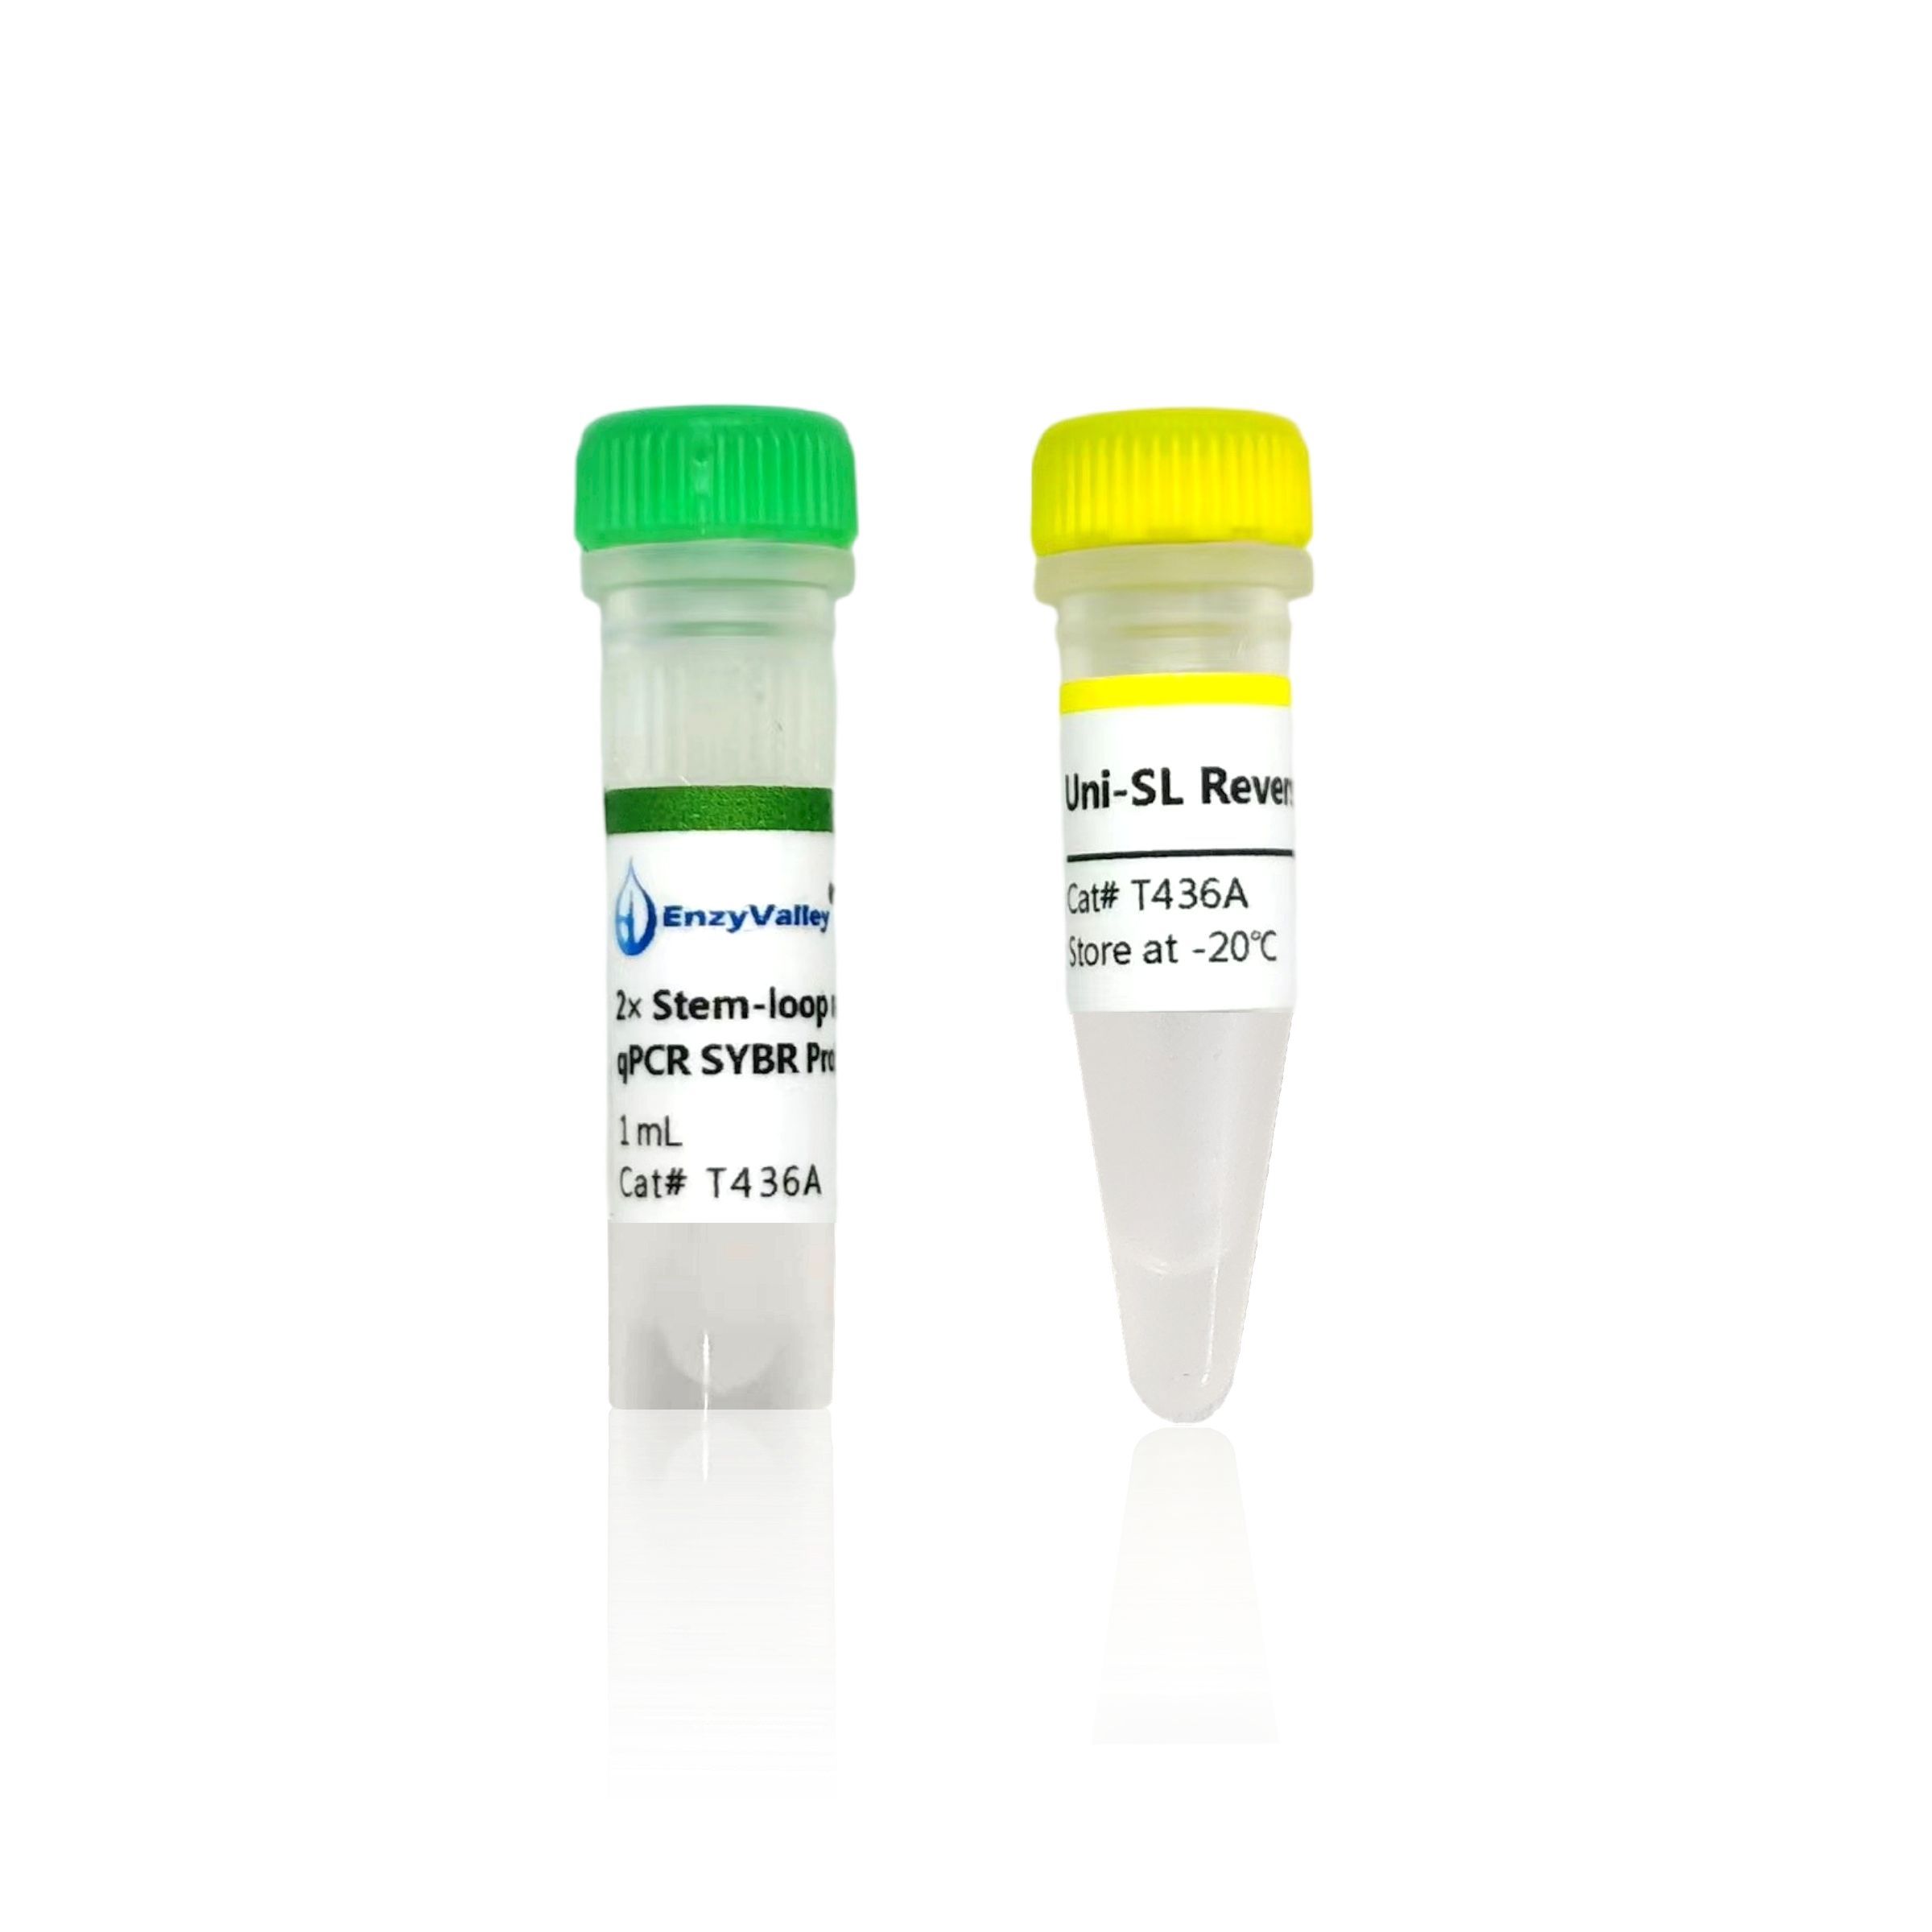 茎环法miRNA RT-qPCR试剂盒：Stem-loop miRNA qPCR SYBR kit